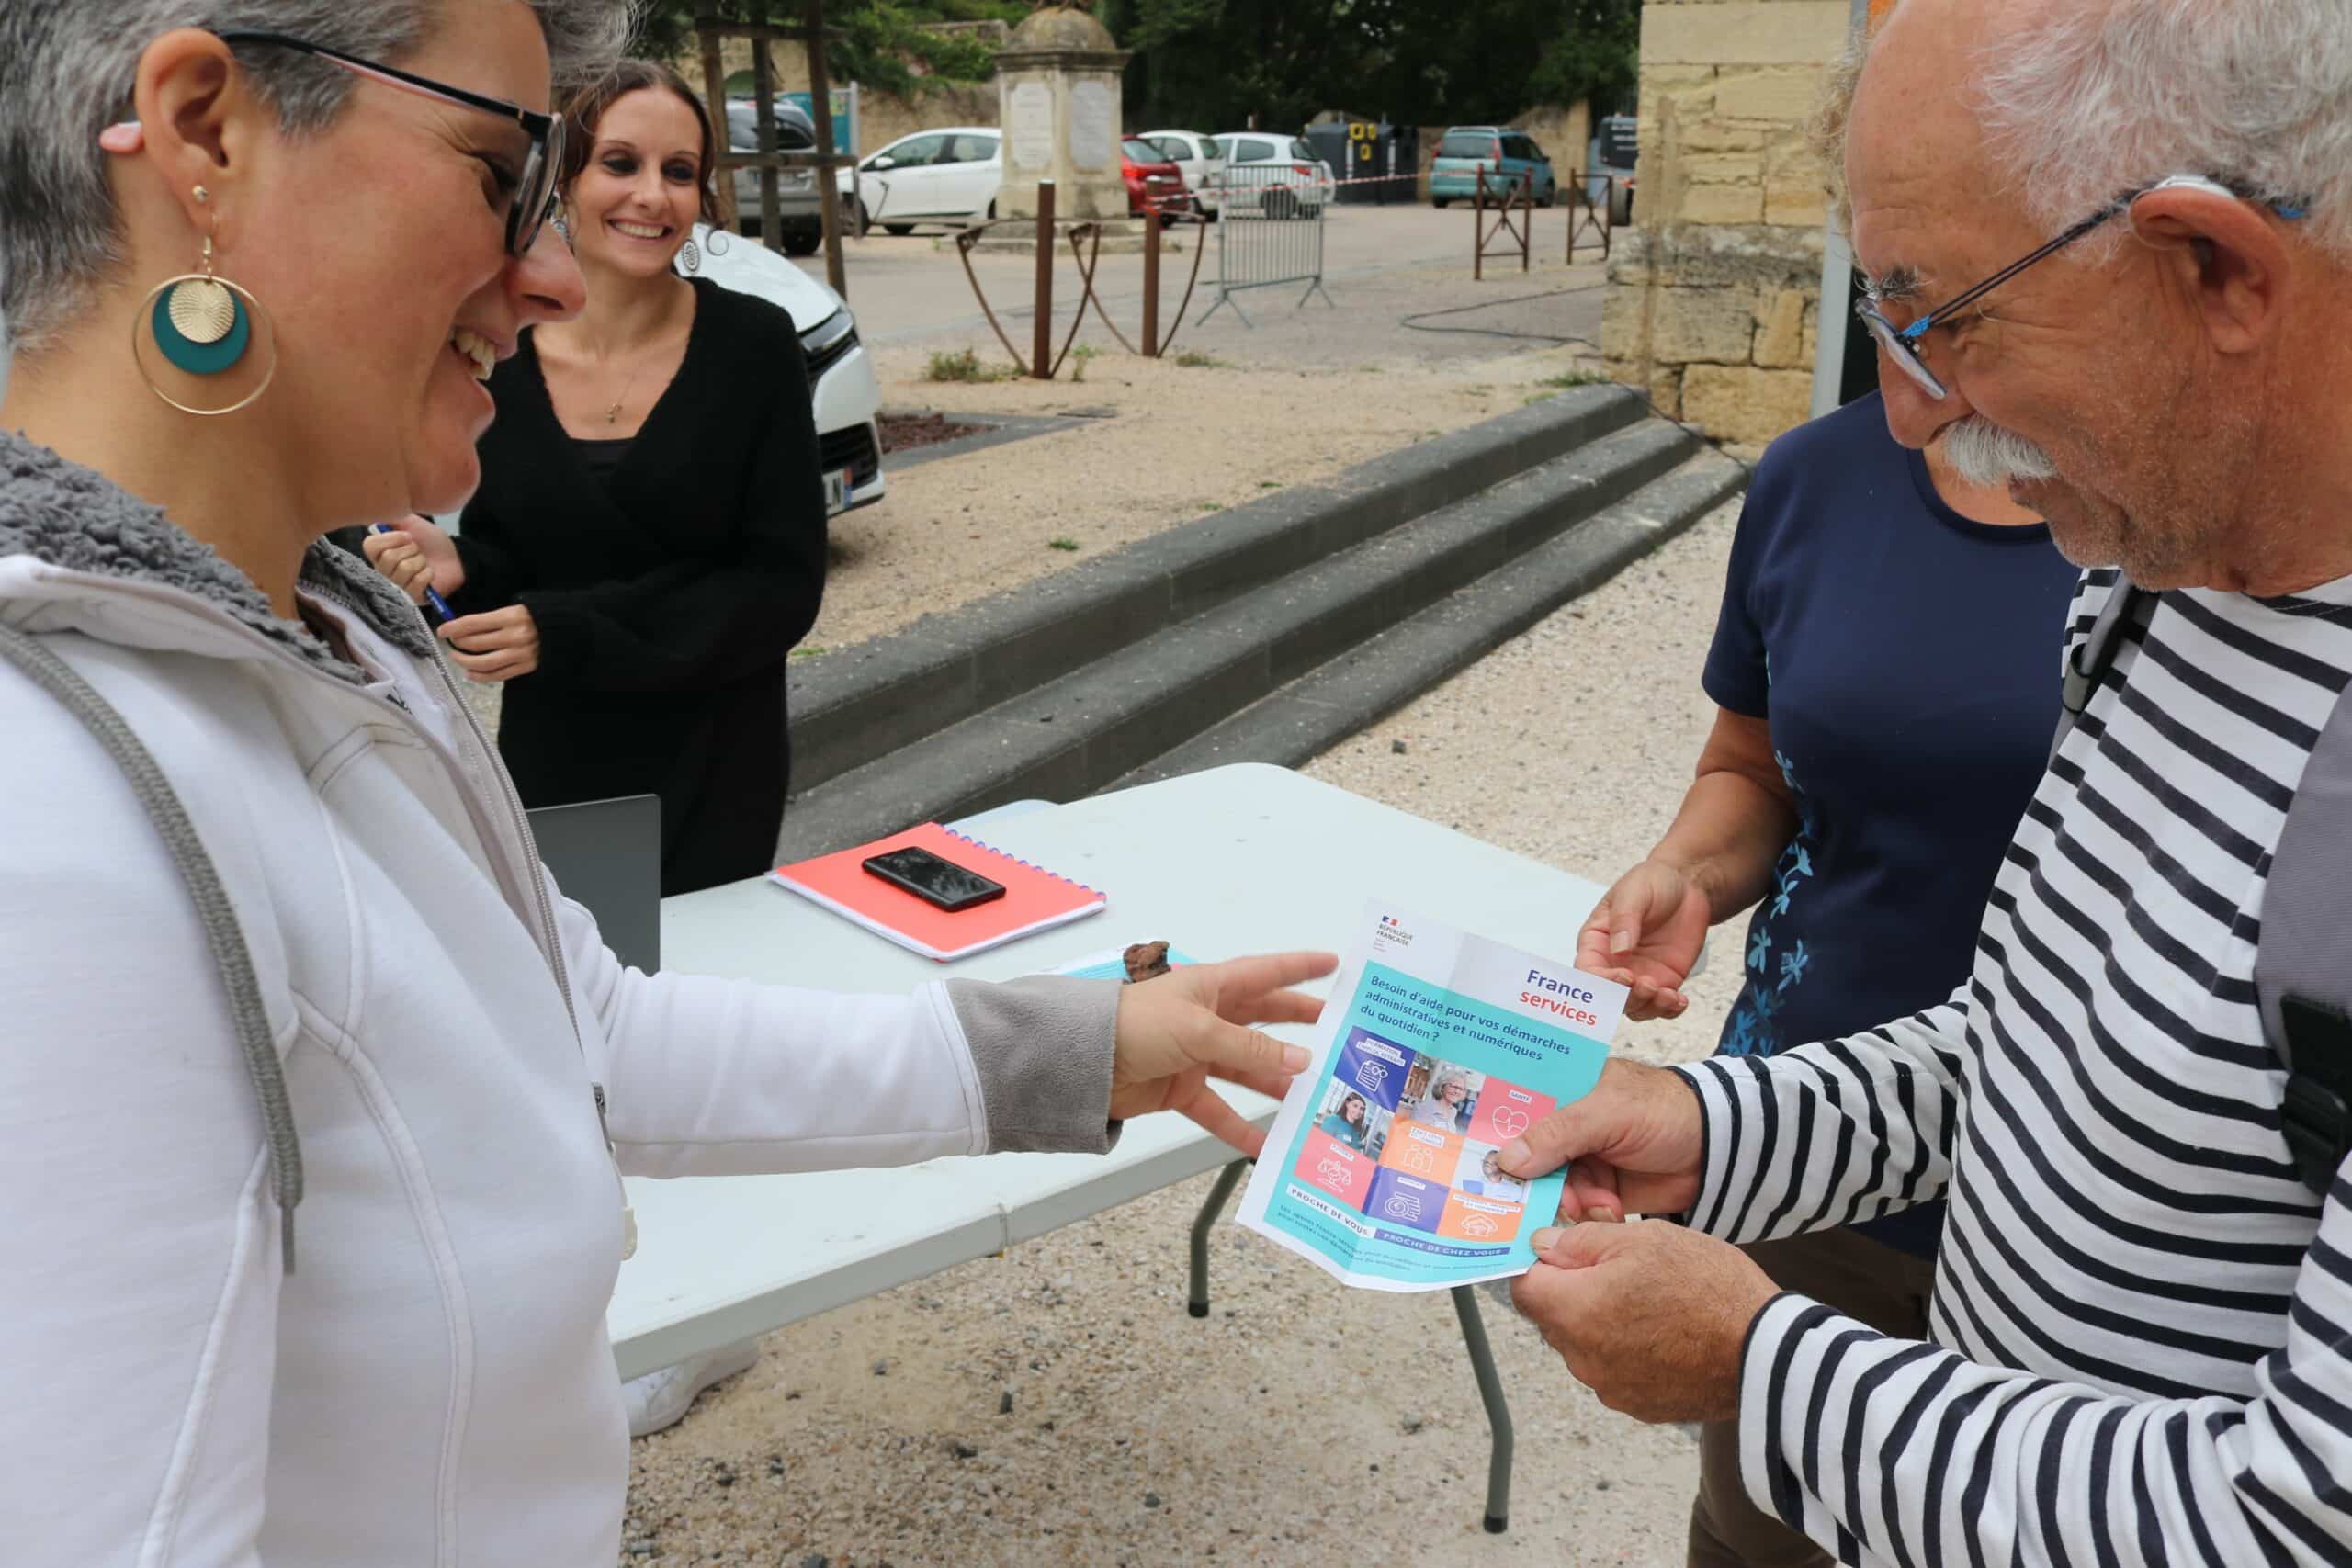 Agglo Hérault Méditerranée france services locaux agde journées portes ouvertes marché agde tourbes